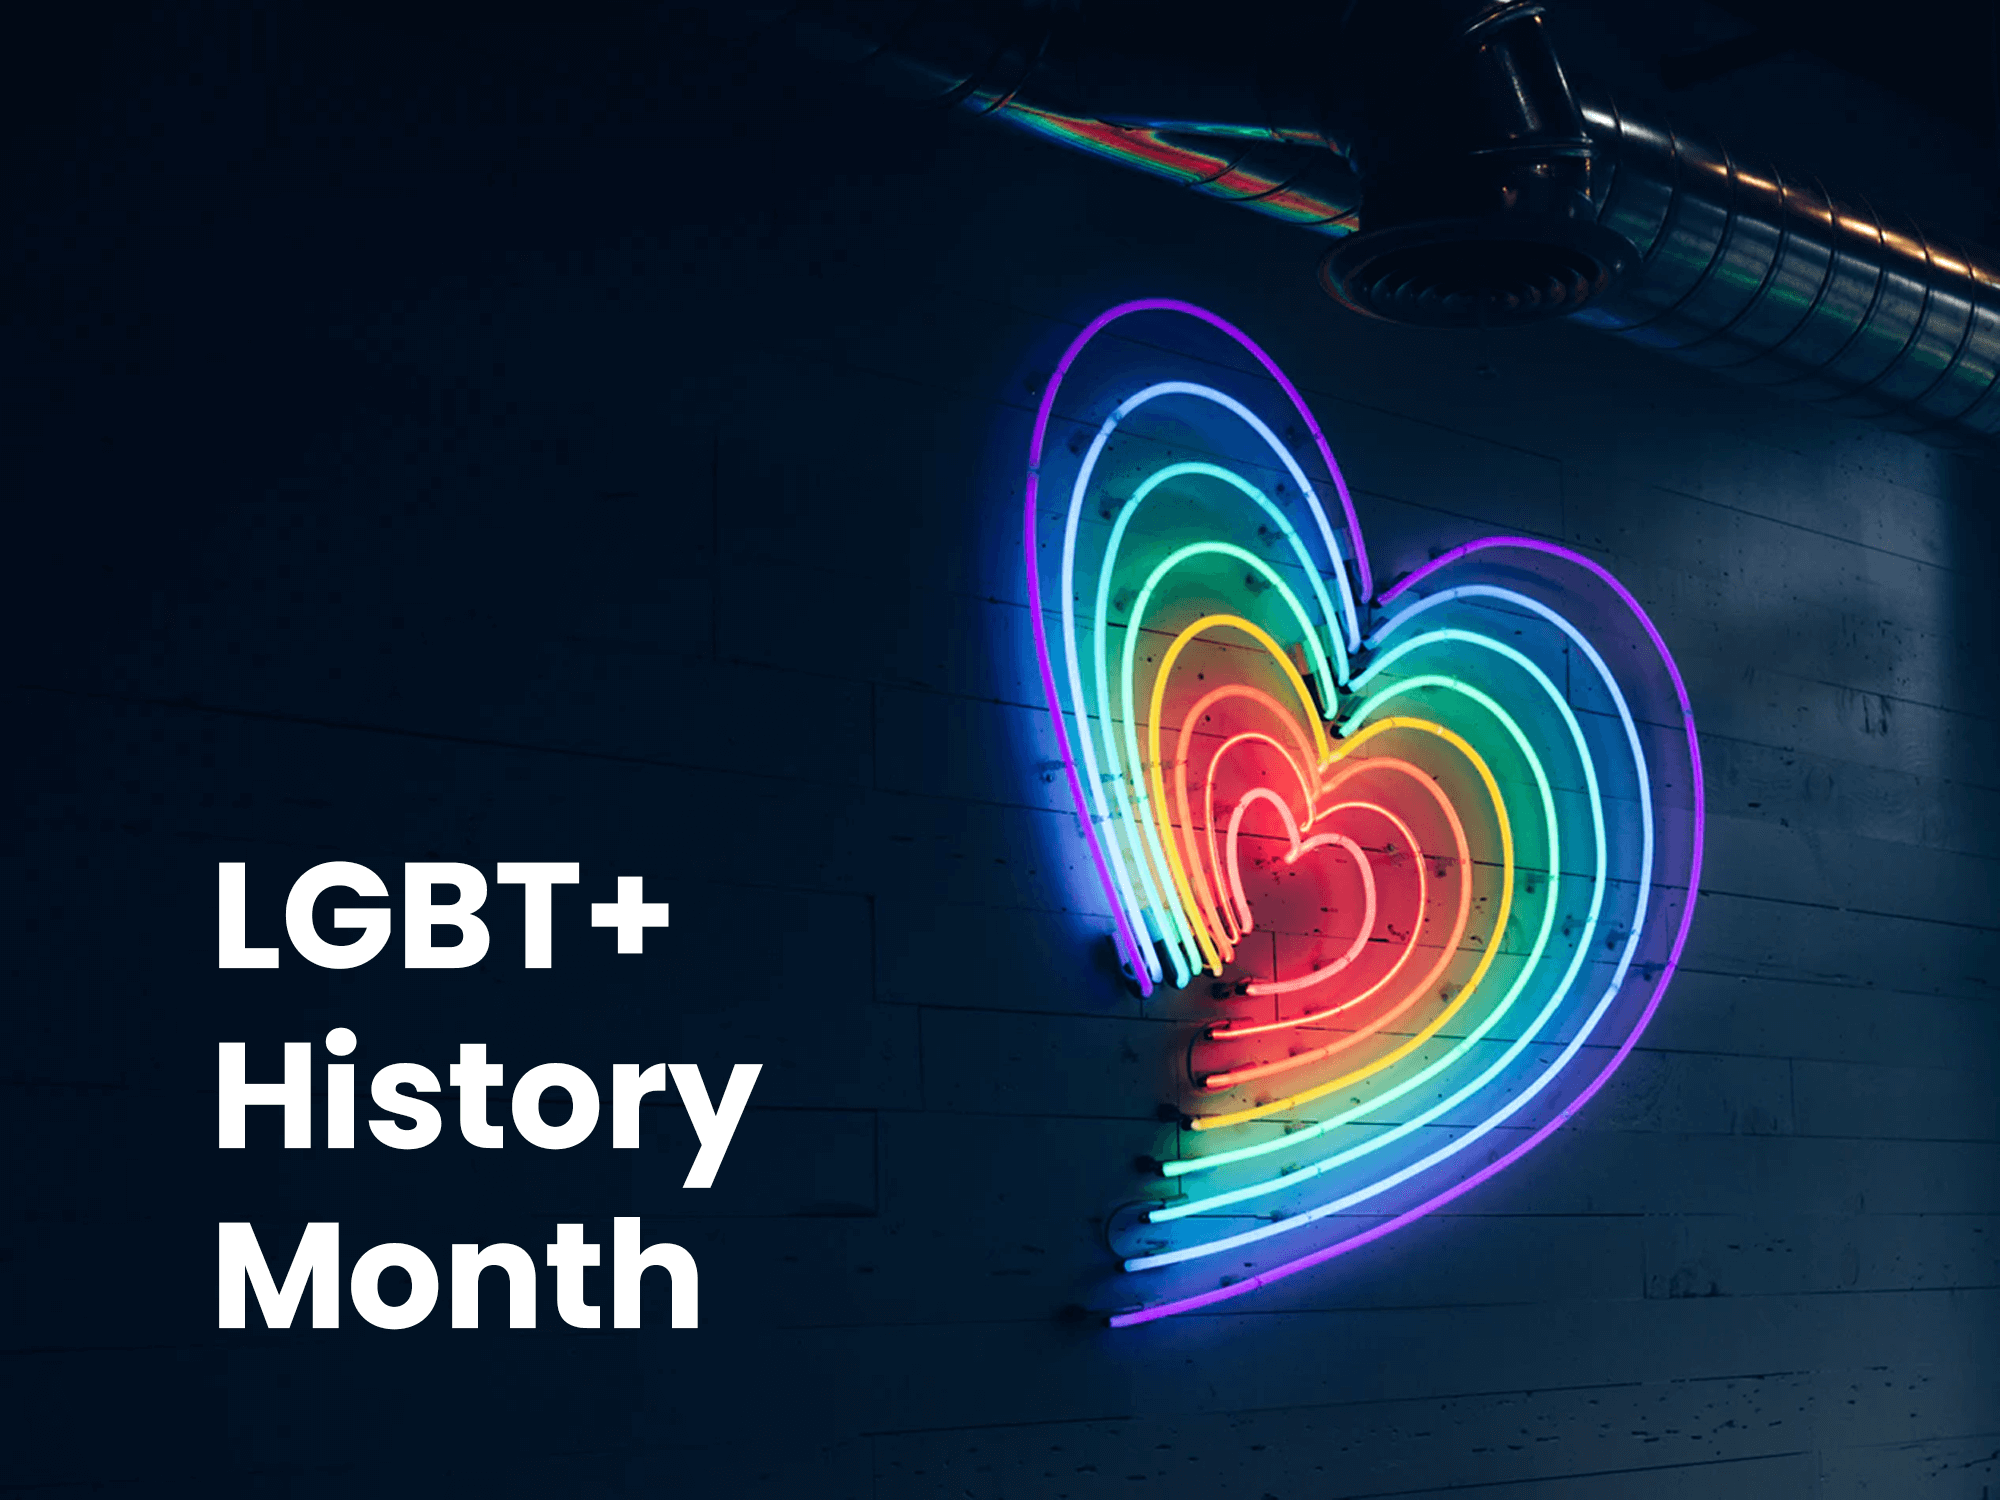 Warum ist der Monat der LGBT-Geschichte wichtig?